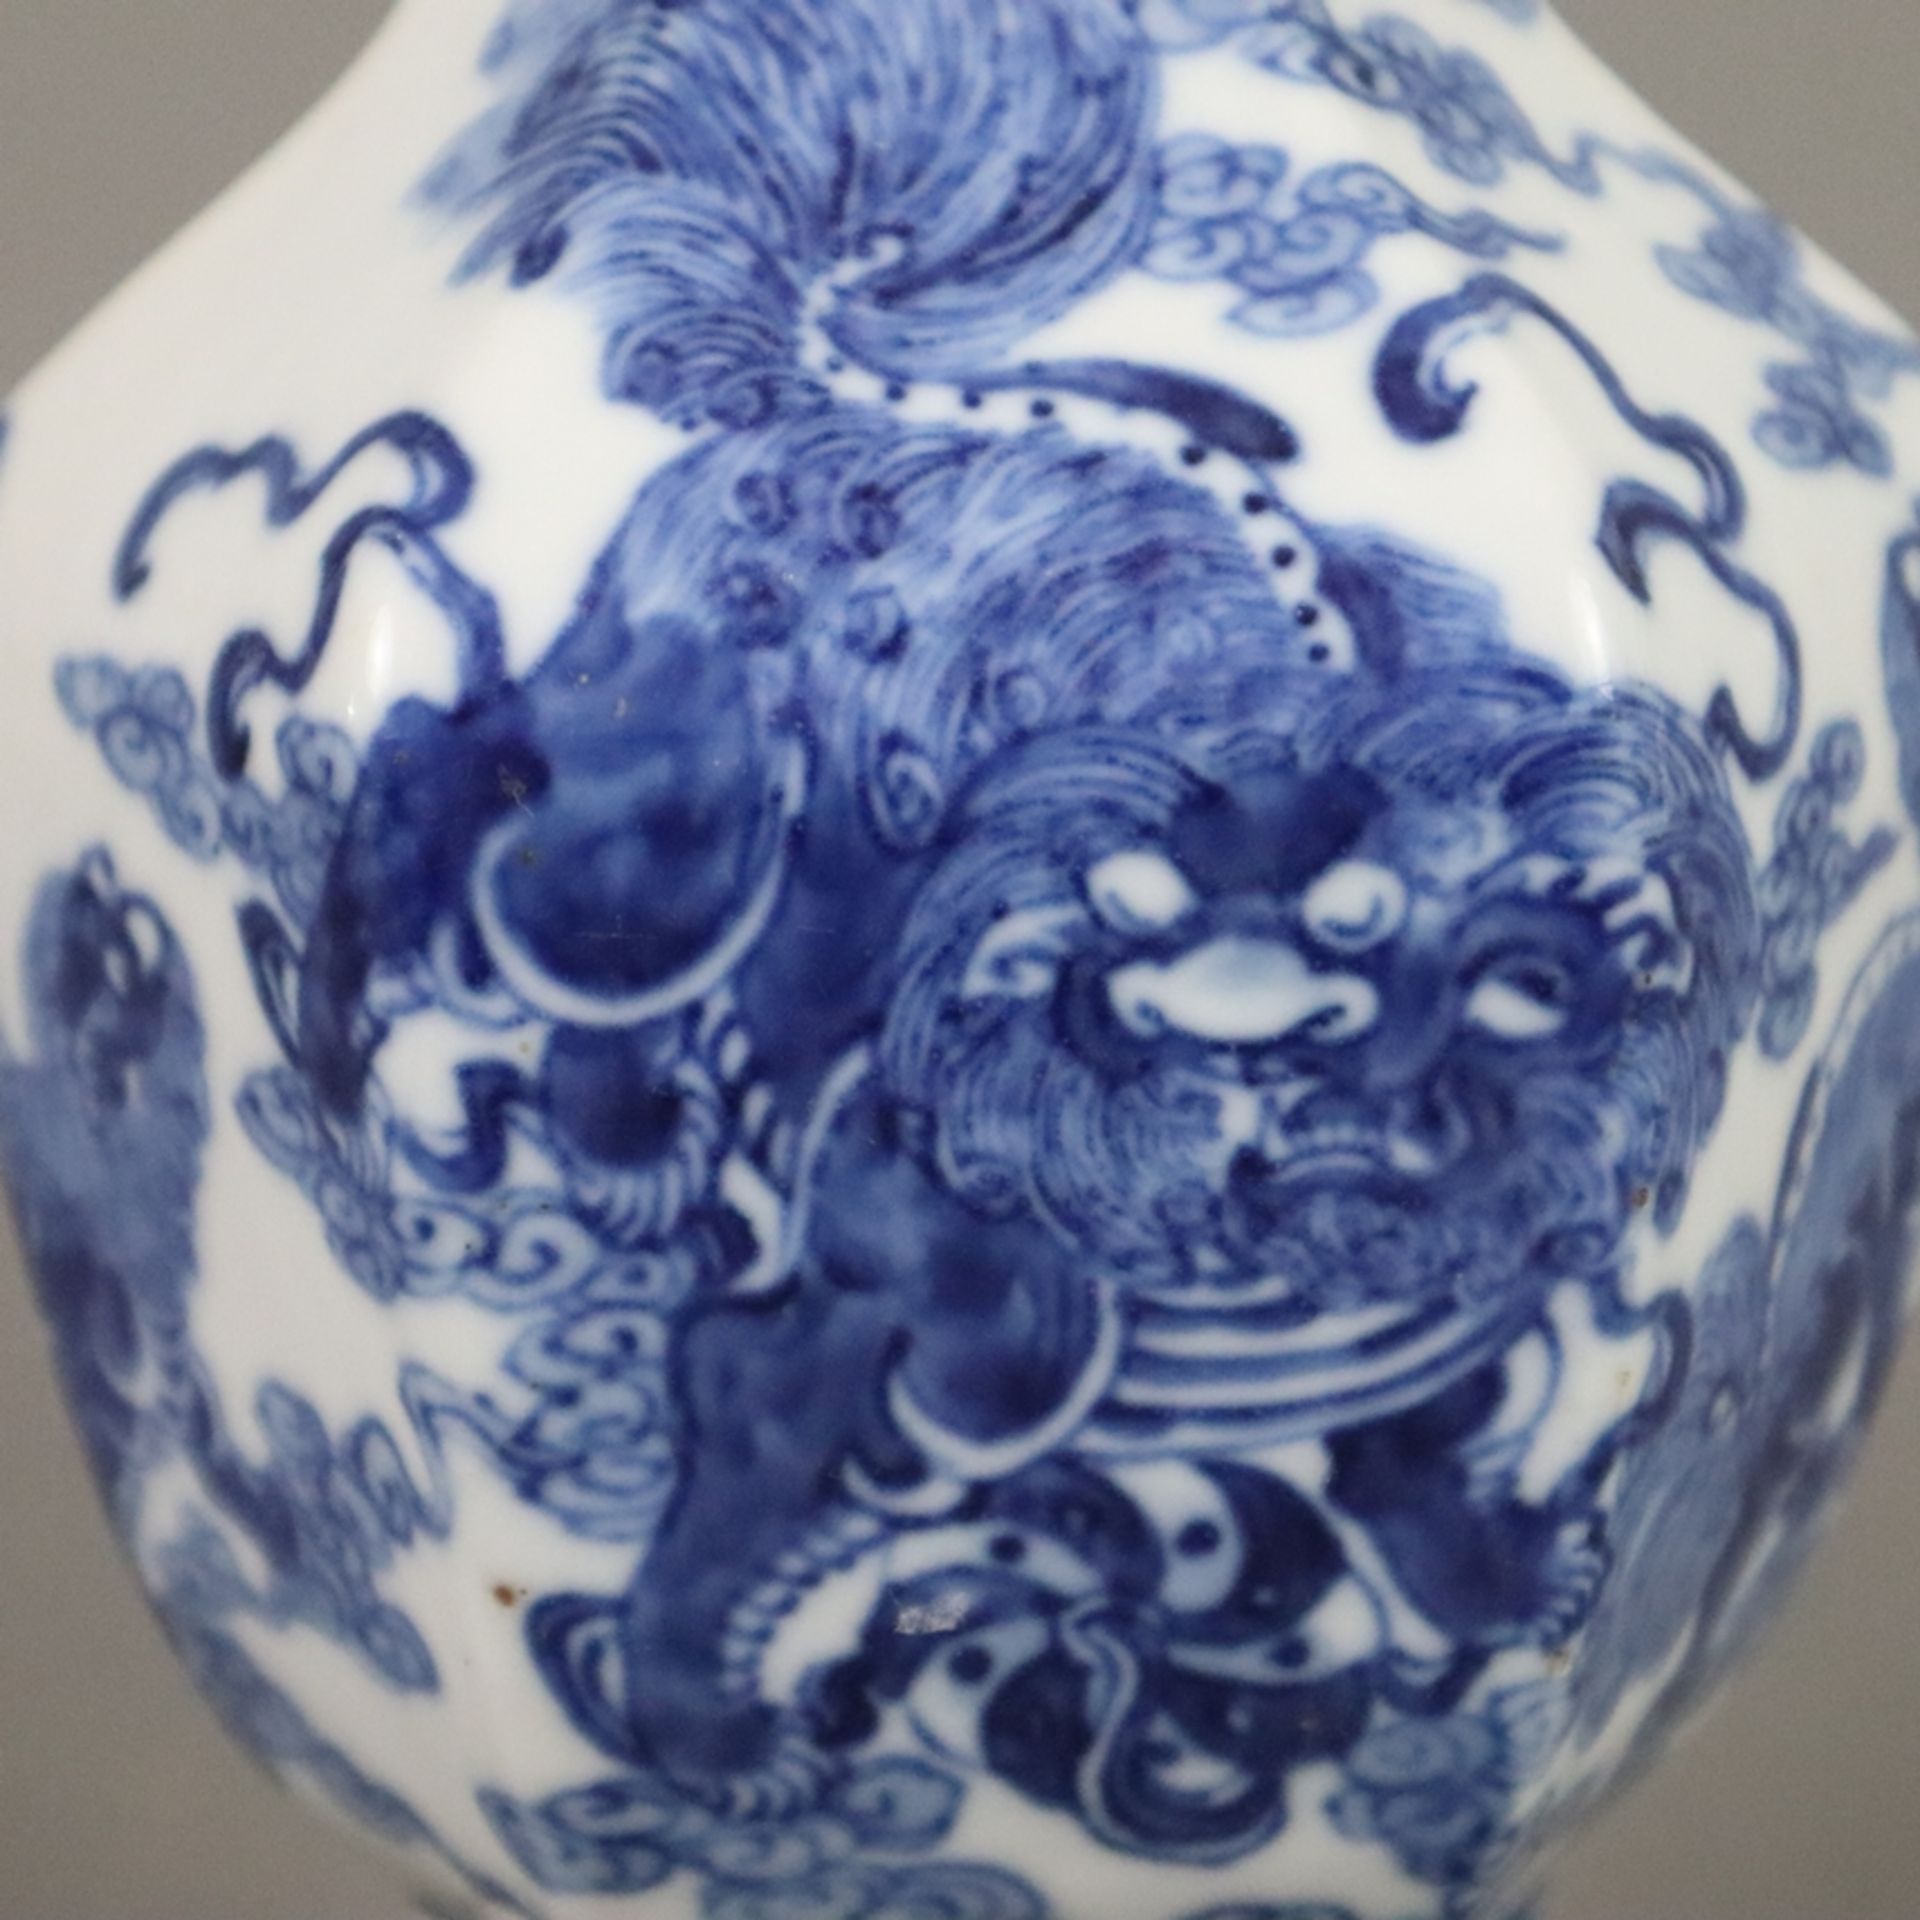 Blau-weiße Vase - Porzellan, gebauchte Balusterform 6-fach gekantet, umlaufend fein gemalter unterg - Bild 4 aus 8